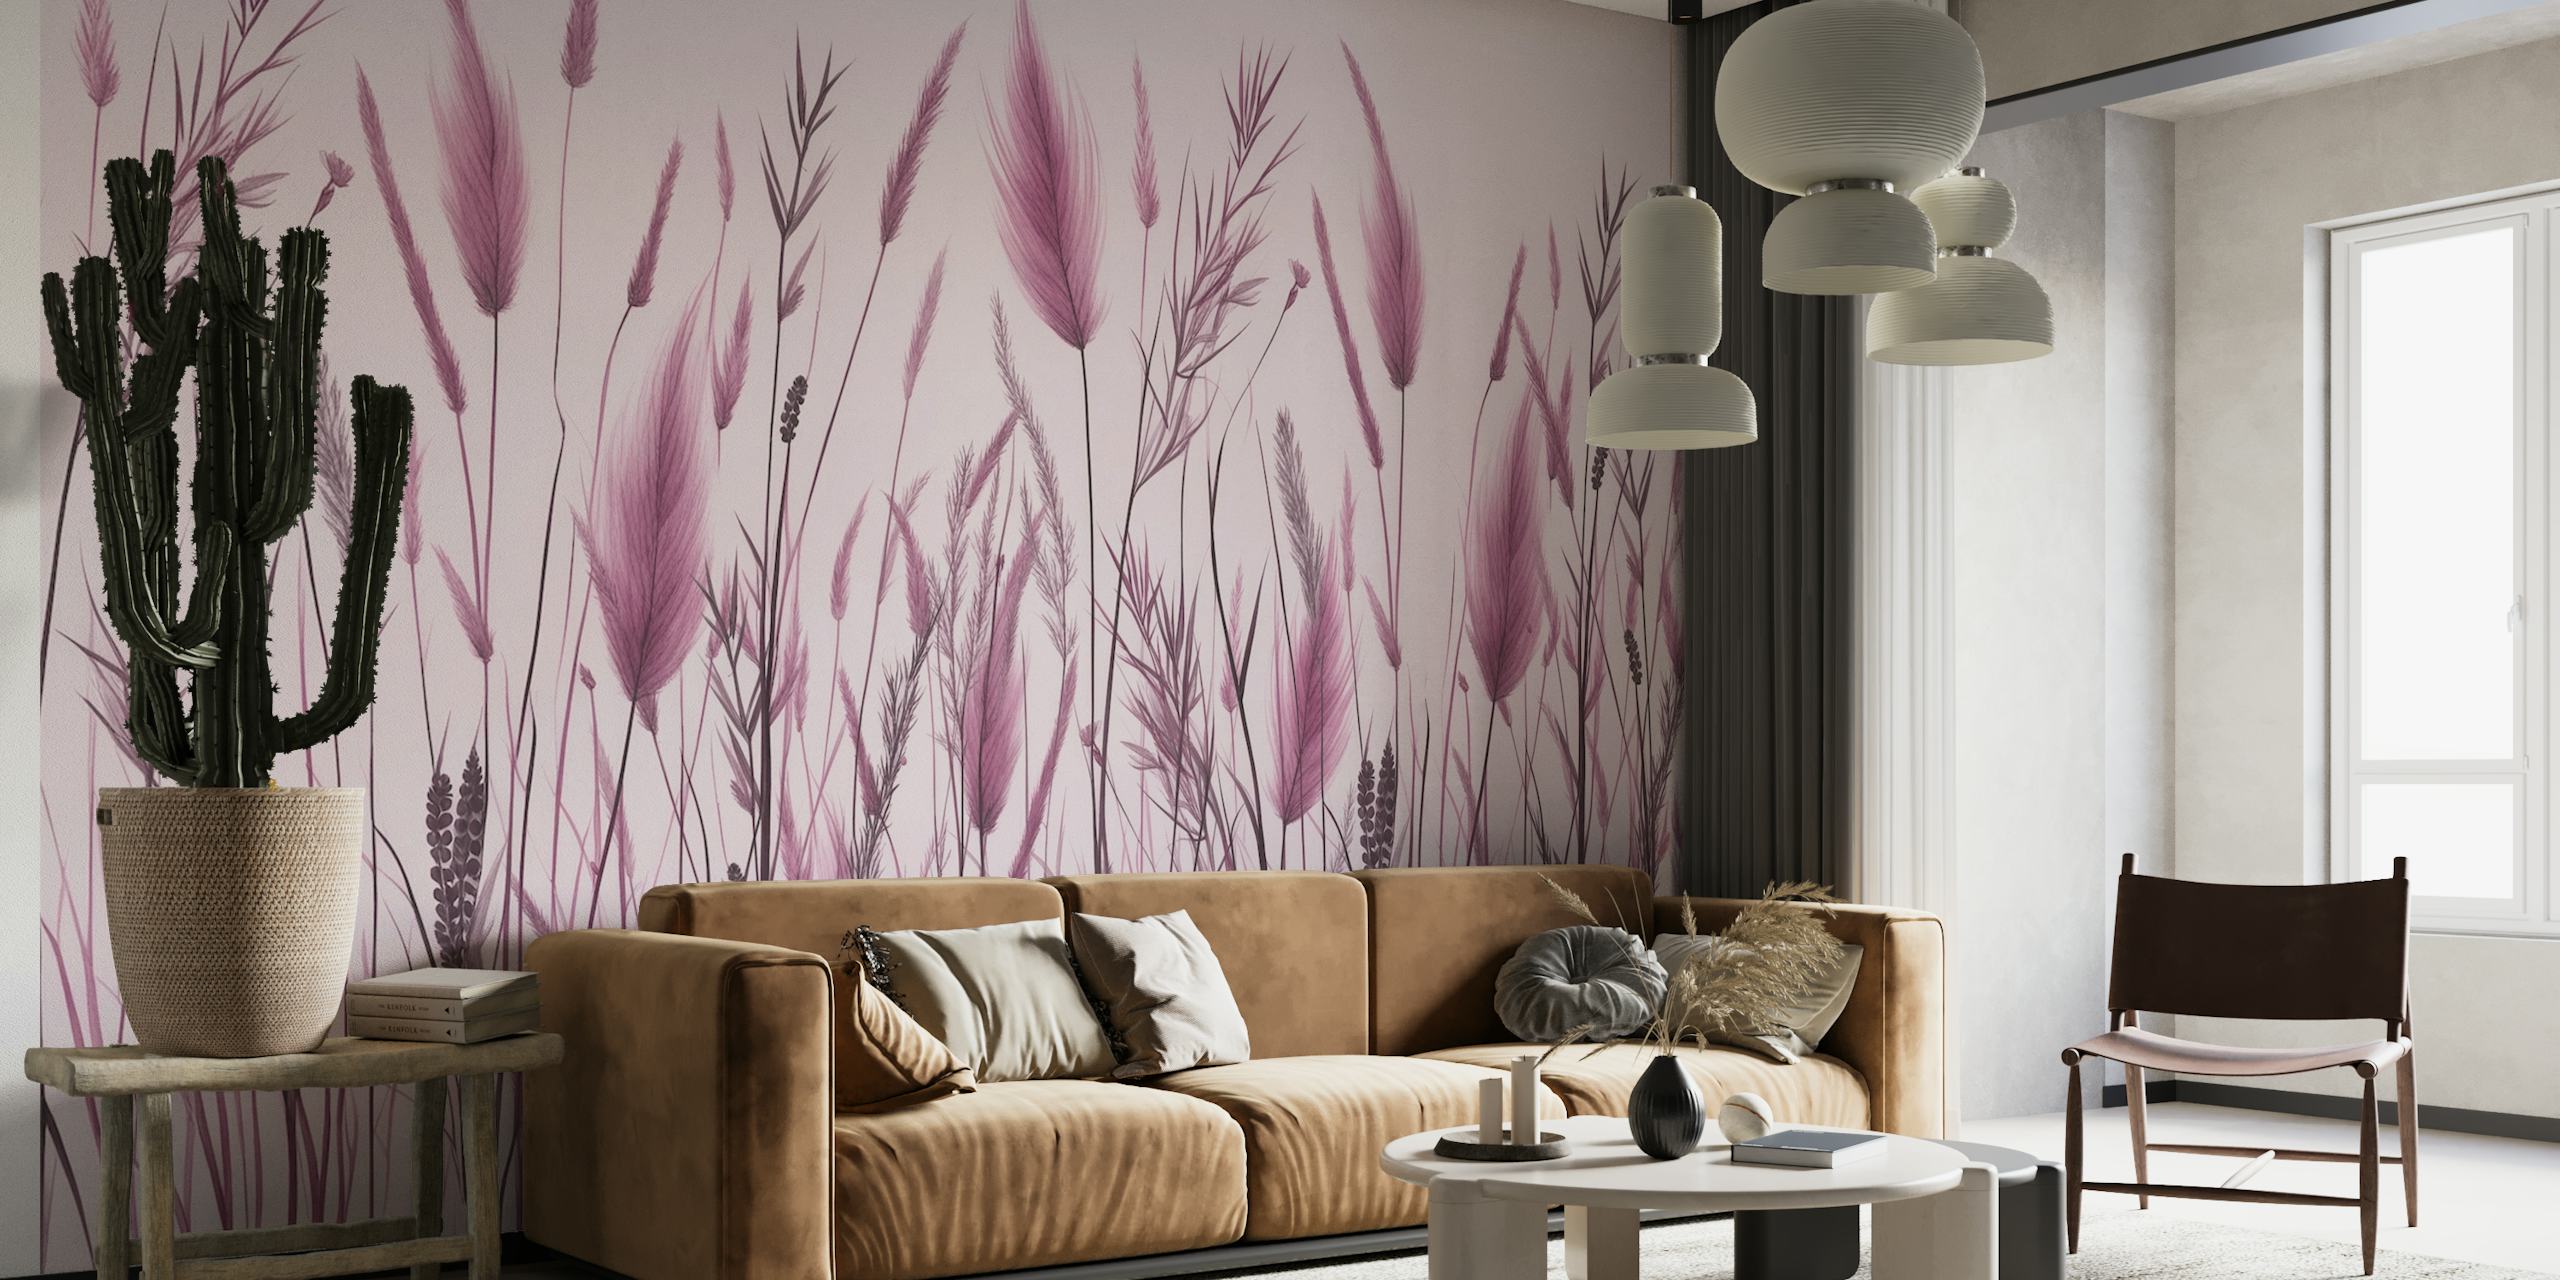 Yksivärinen vaaleanpunainen ja harmaa kasvitieteellinen seinämaalaus villiruohosta